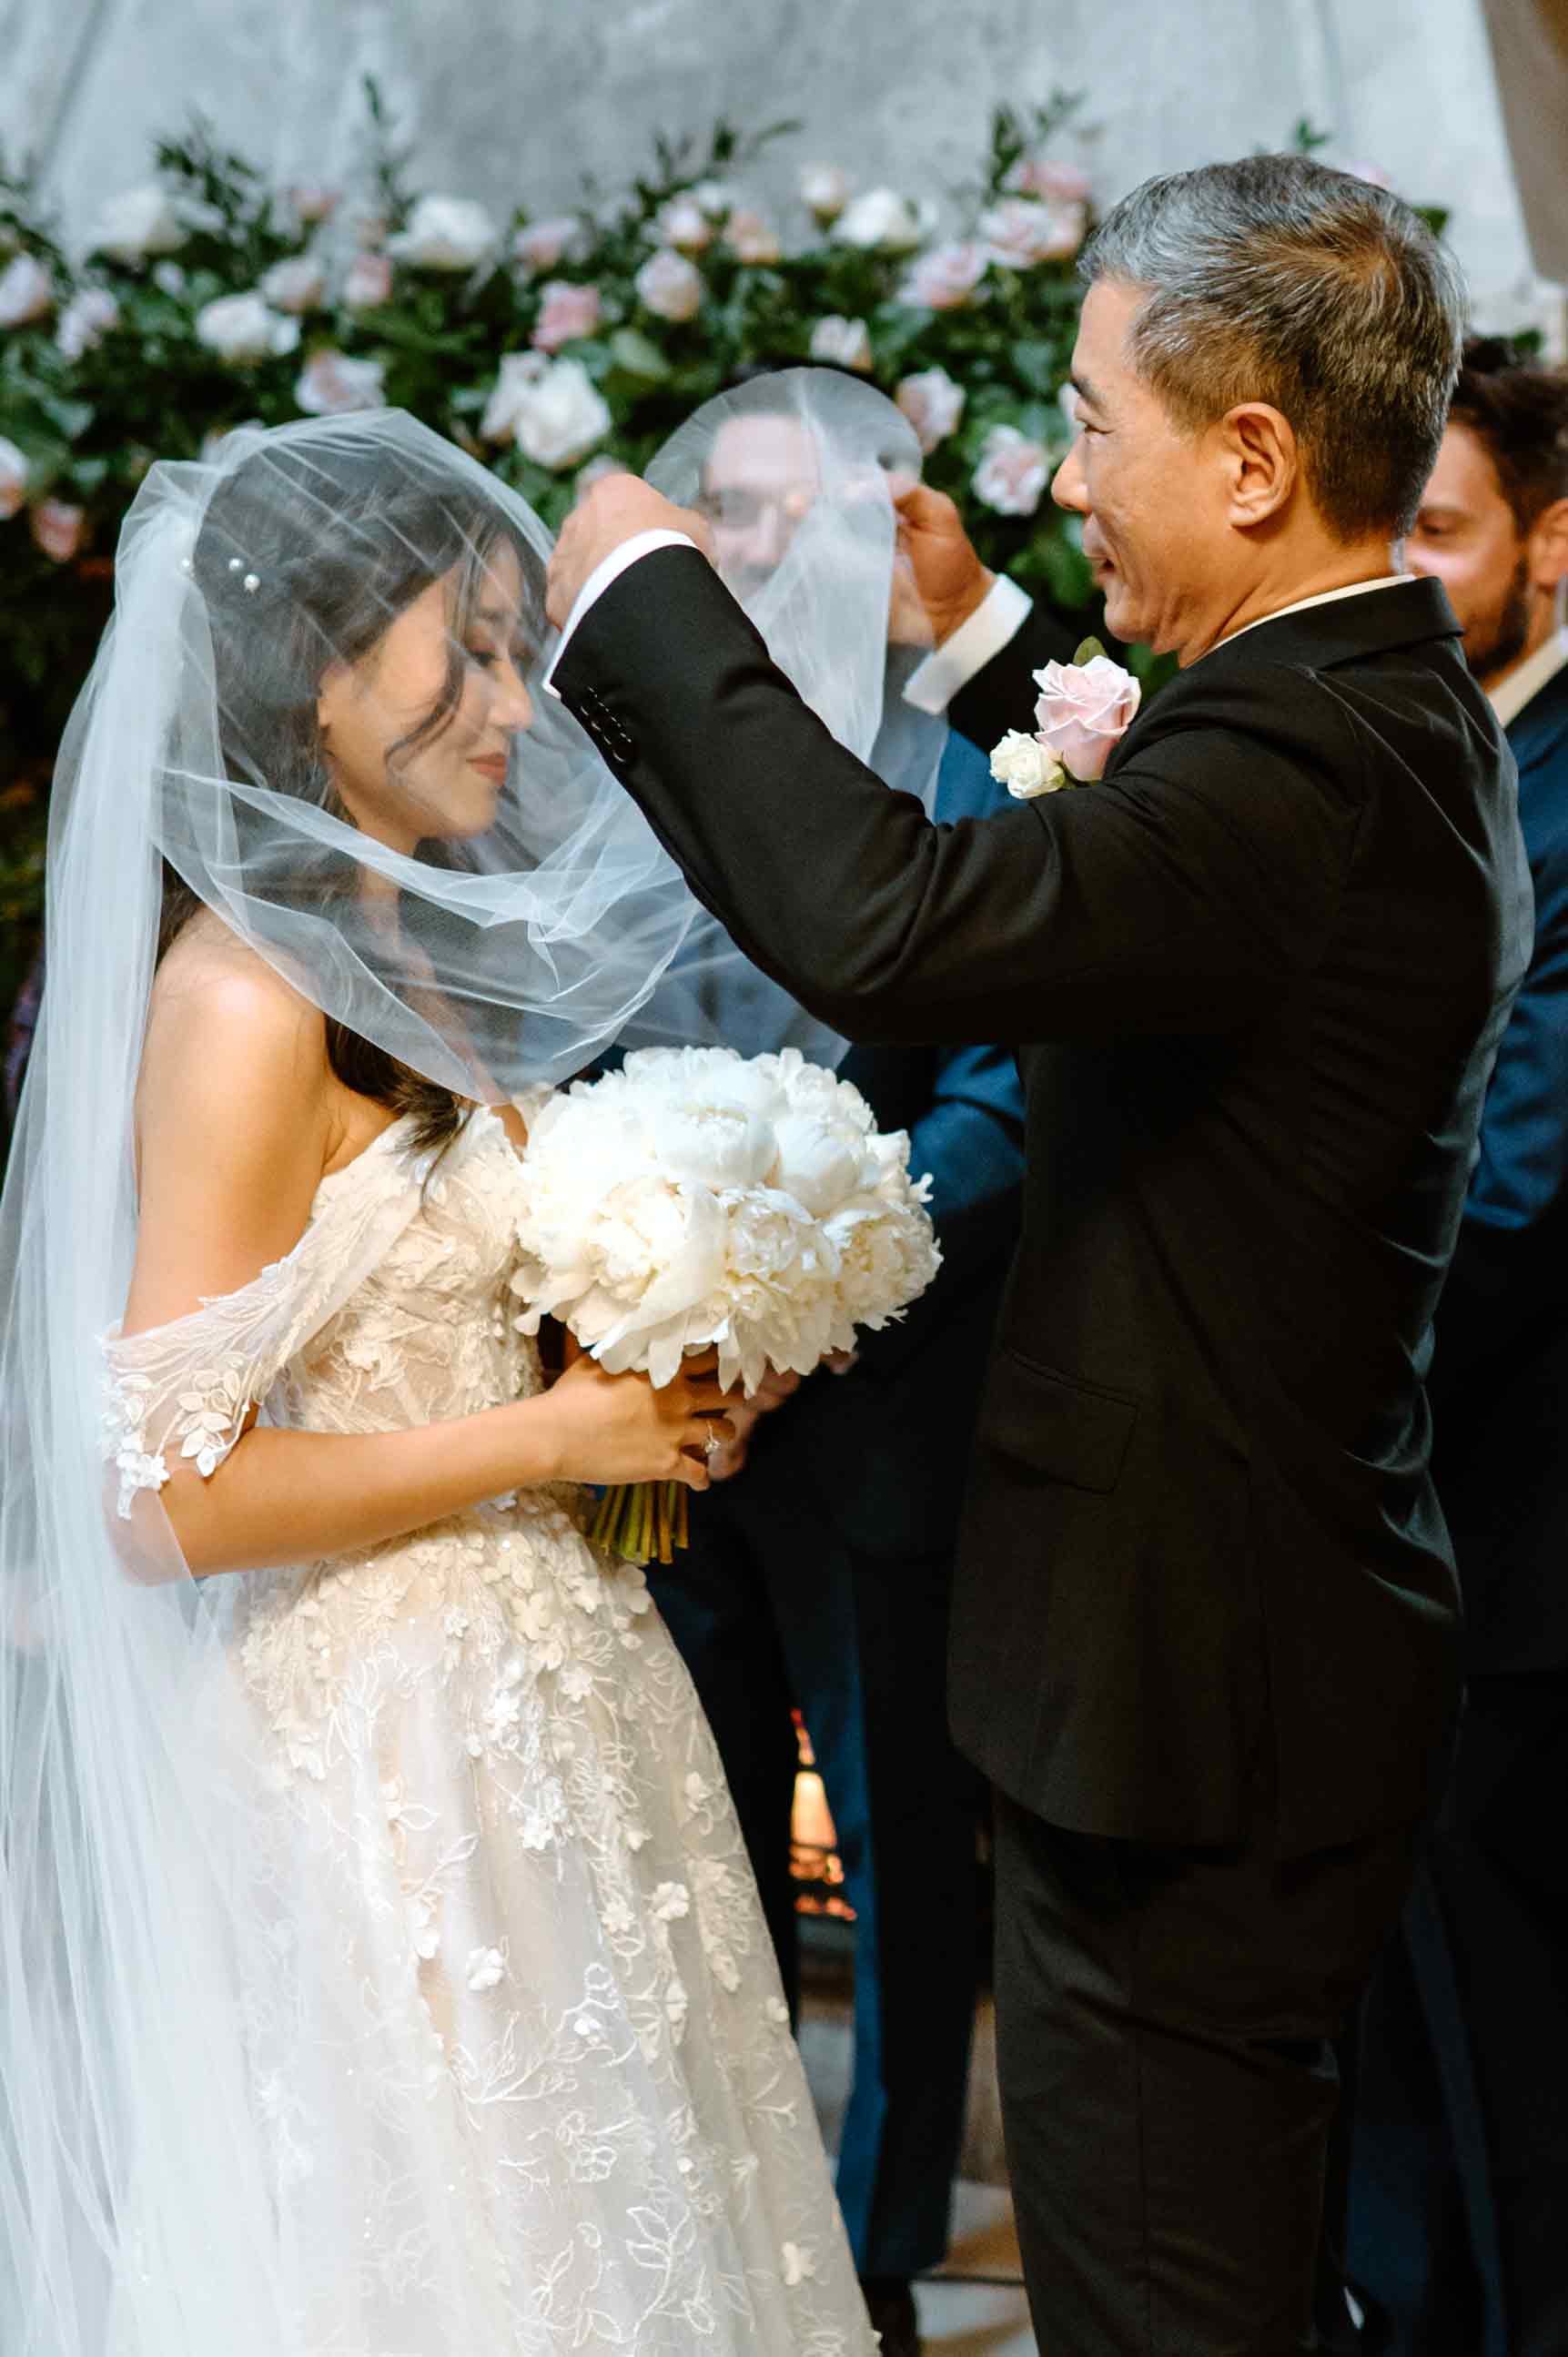 dad-flipping-brides-veil-ceremony.jpg